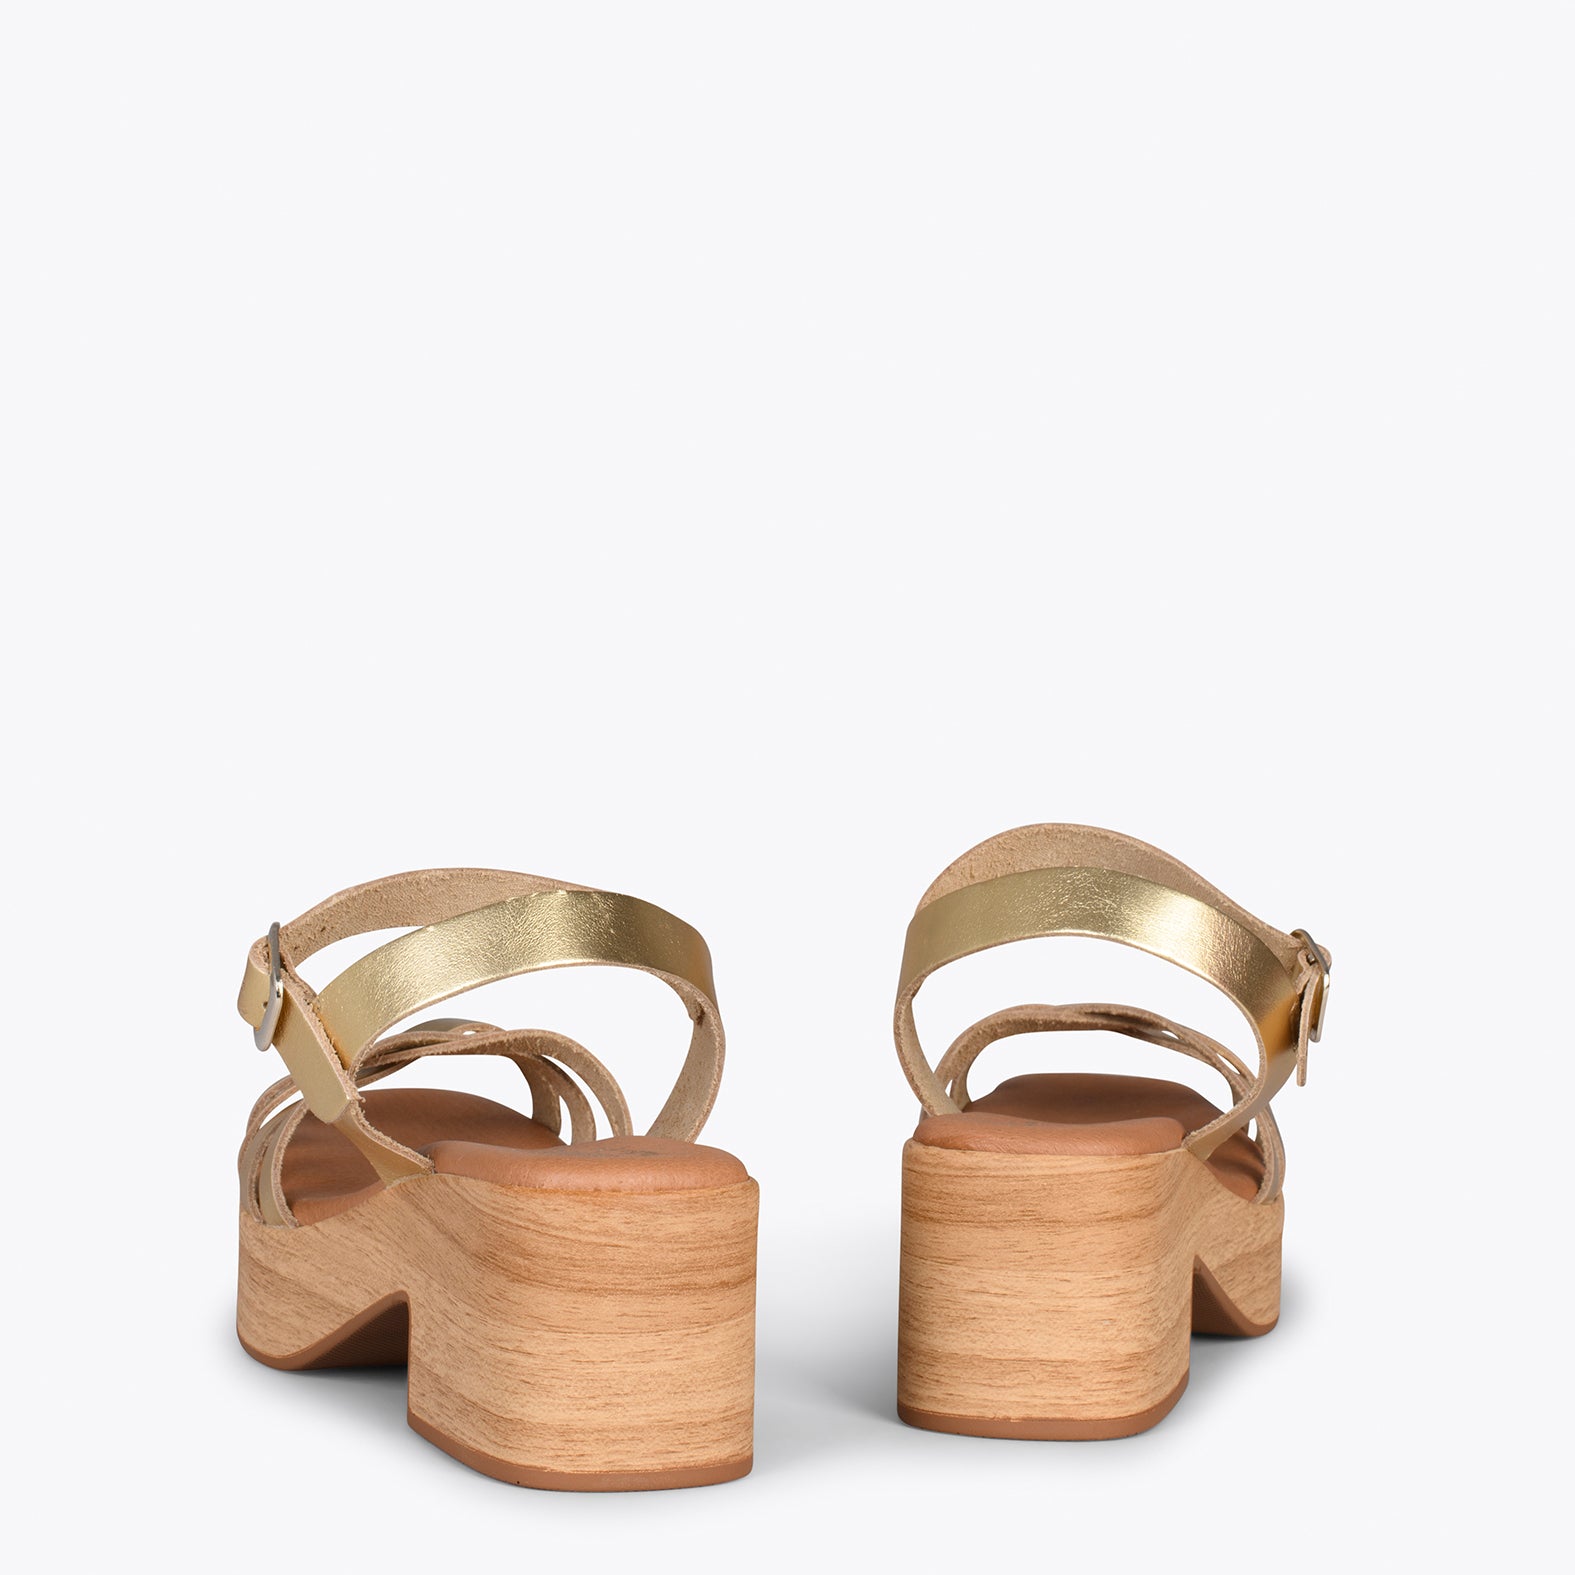 WOOD – Sandalias imitación madera con tiras PLATINO